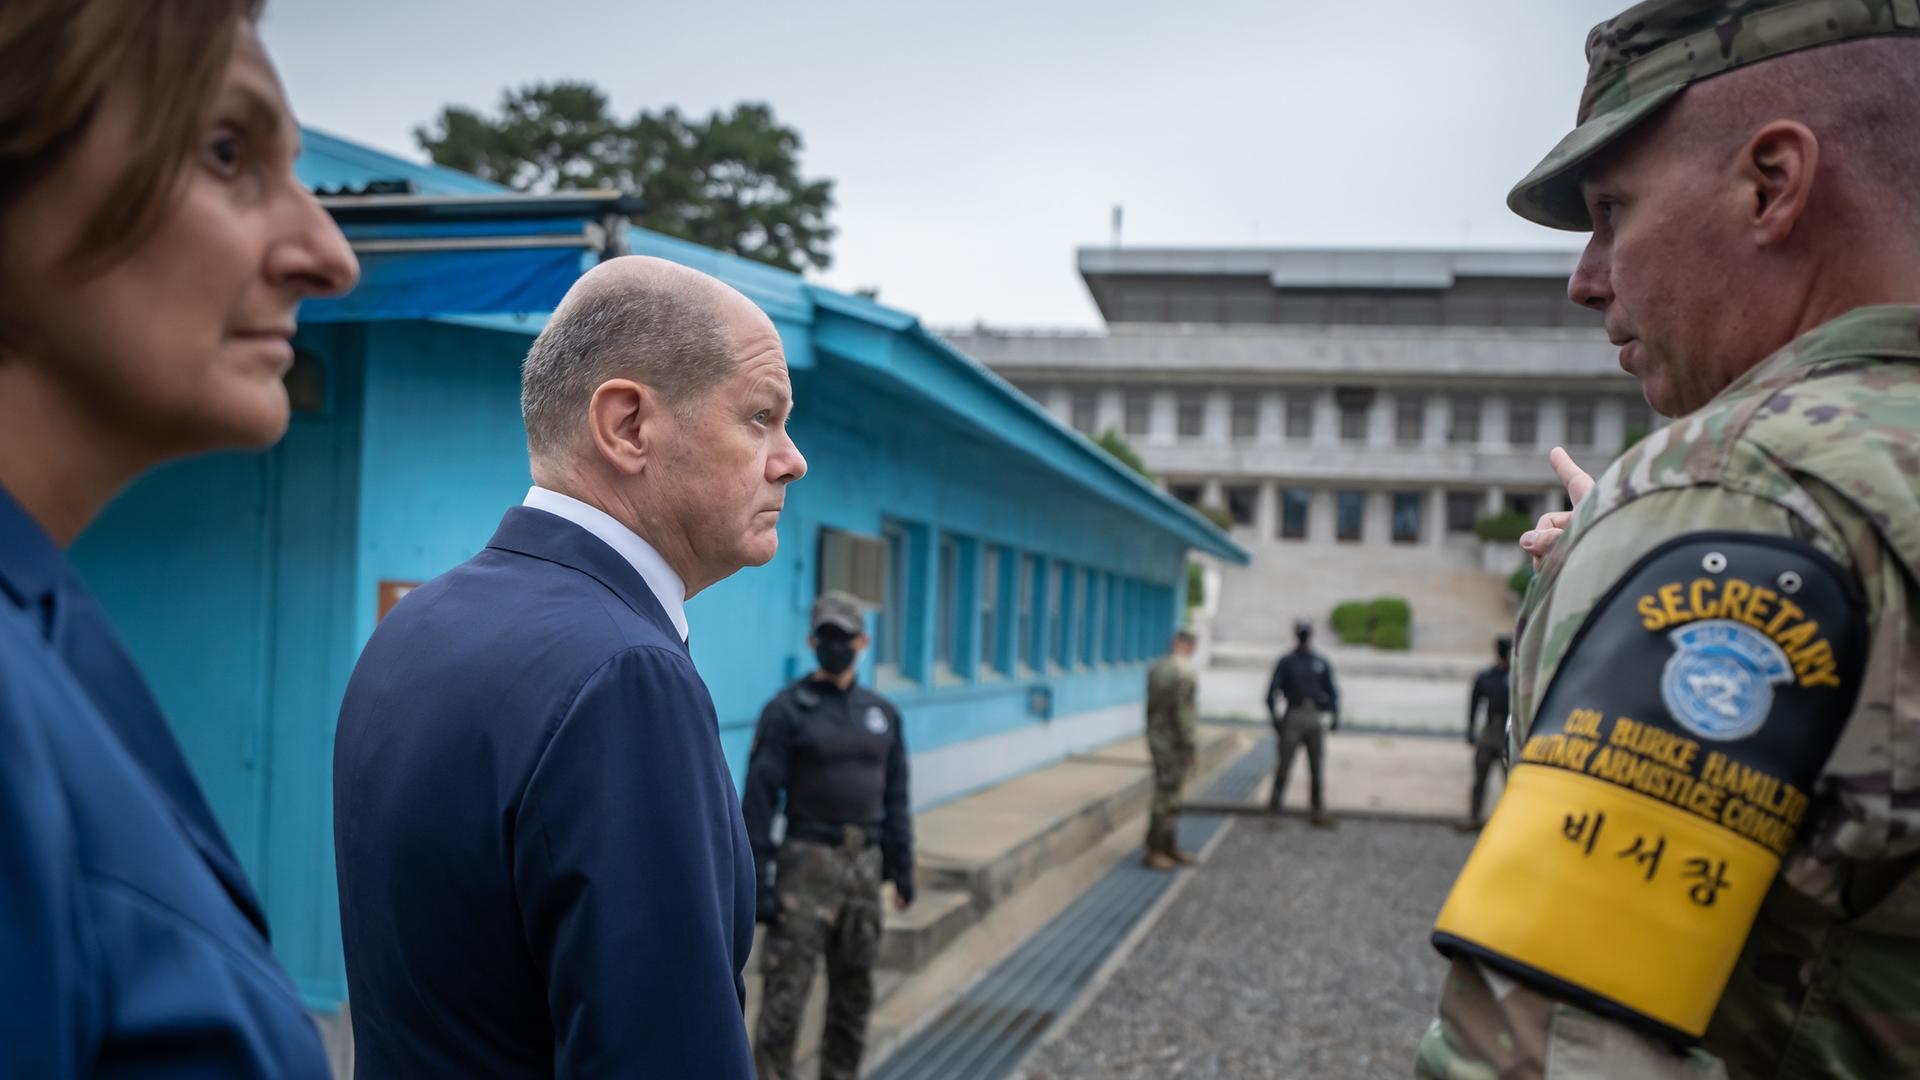 Bundeskanzler Olaf Scholz (SPD), und seine Frau Britta Ernst sprechen mit Burke Hamilton, kommandierender Offizier der Waffenstillstandskommission beim Besuch der entmilitarisierten Zone an der Grenze zu Nordkorea. 